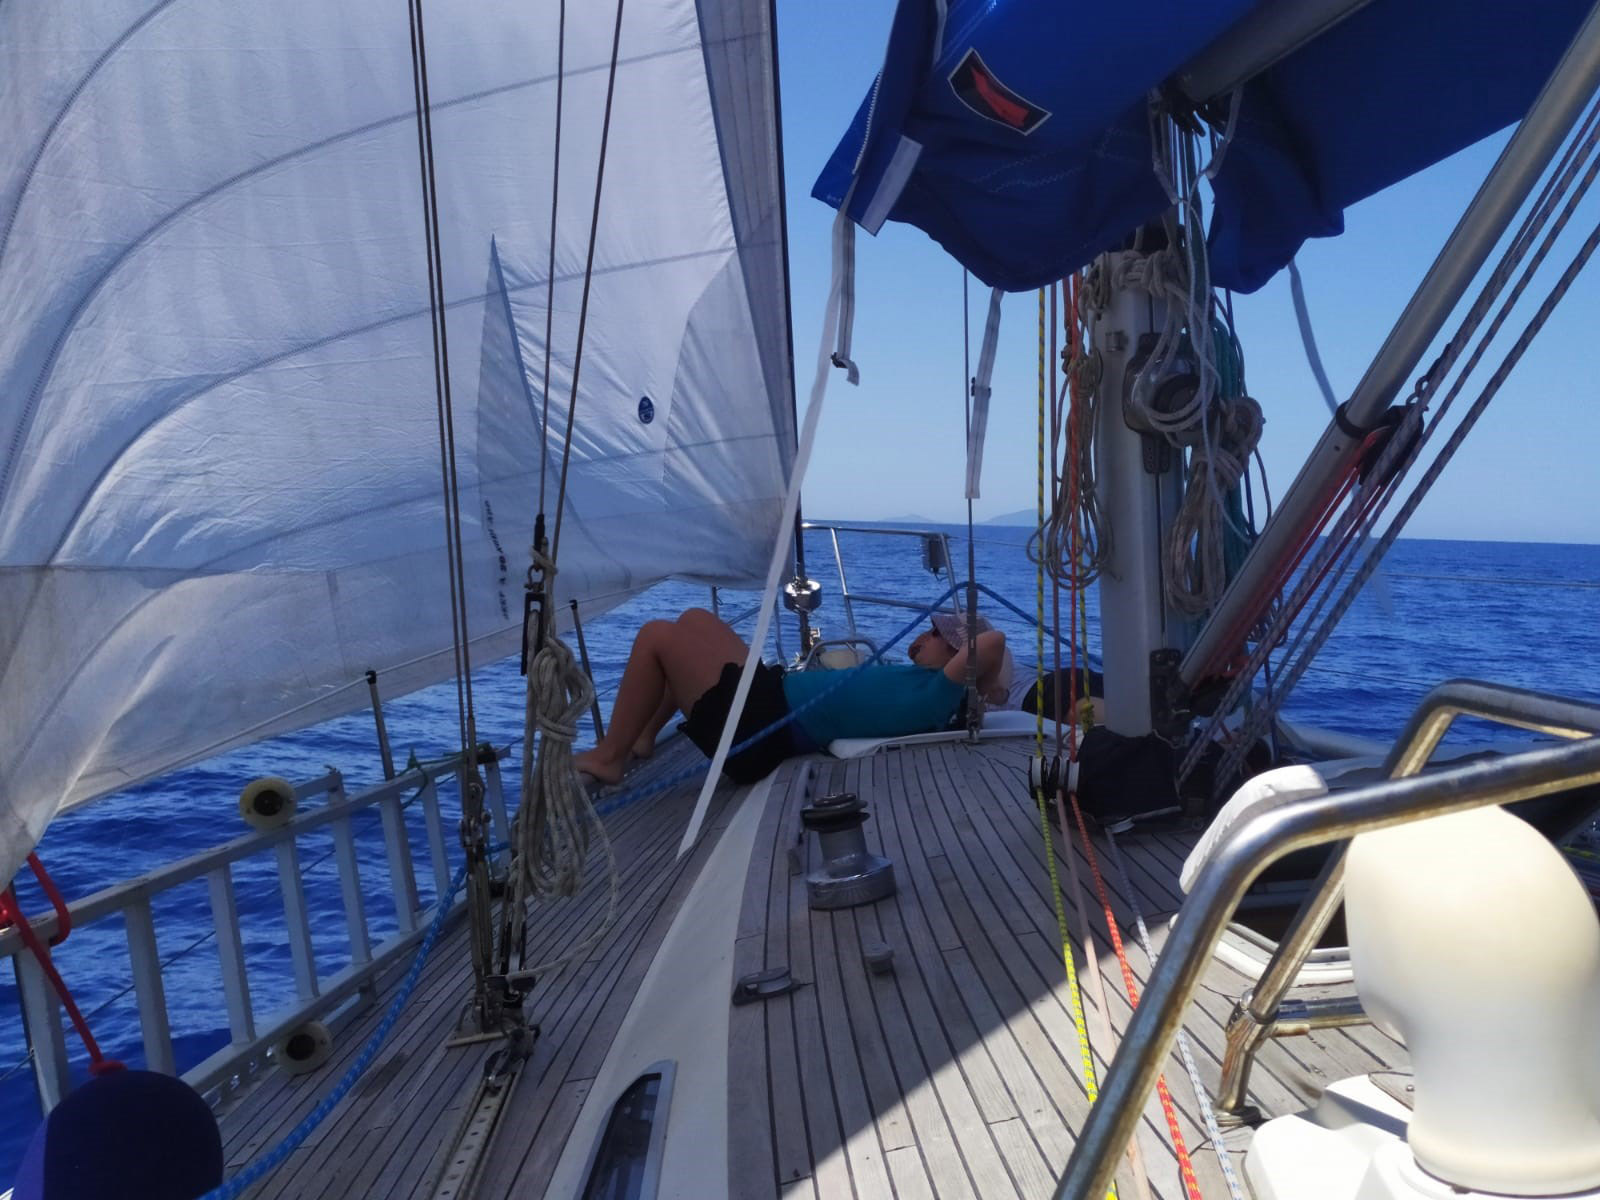 Sardinia sailing excursions - Sail boat2 